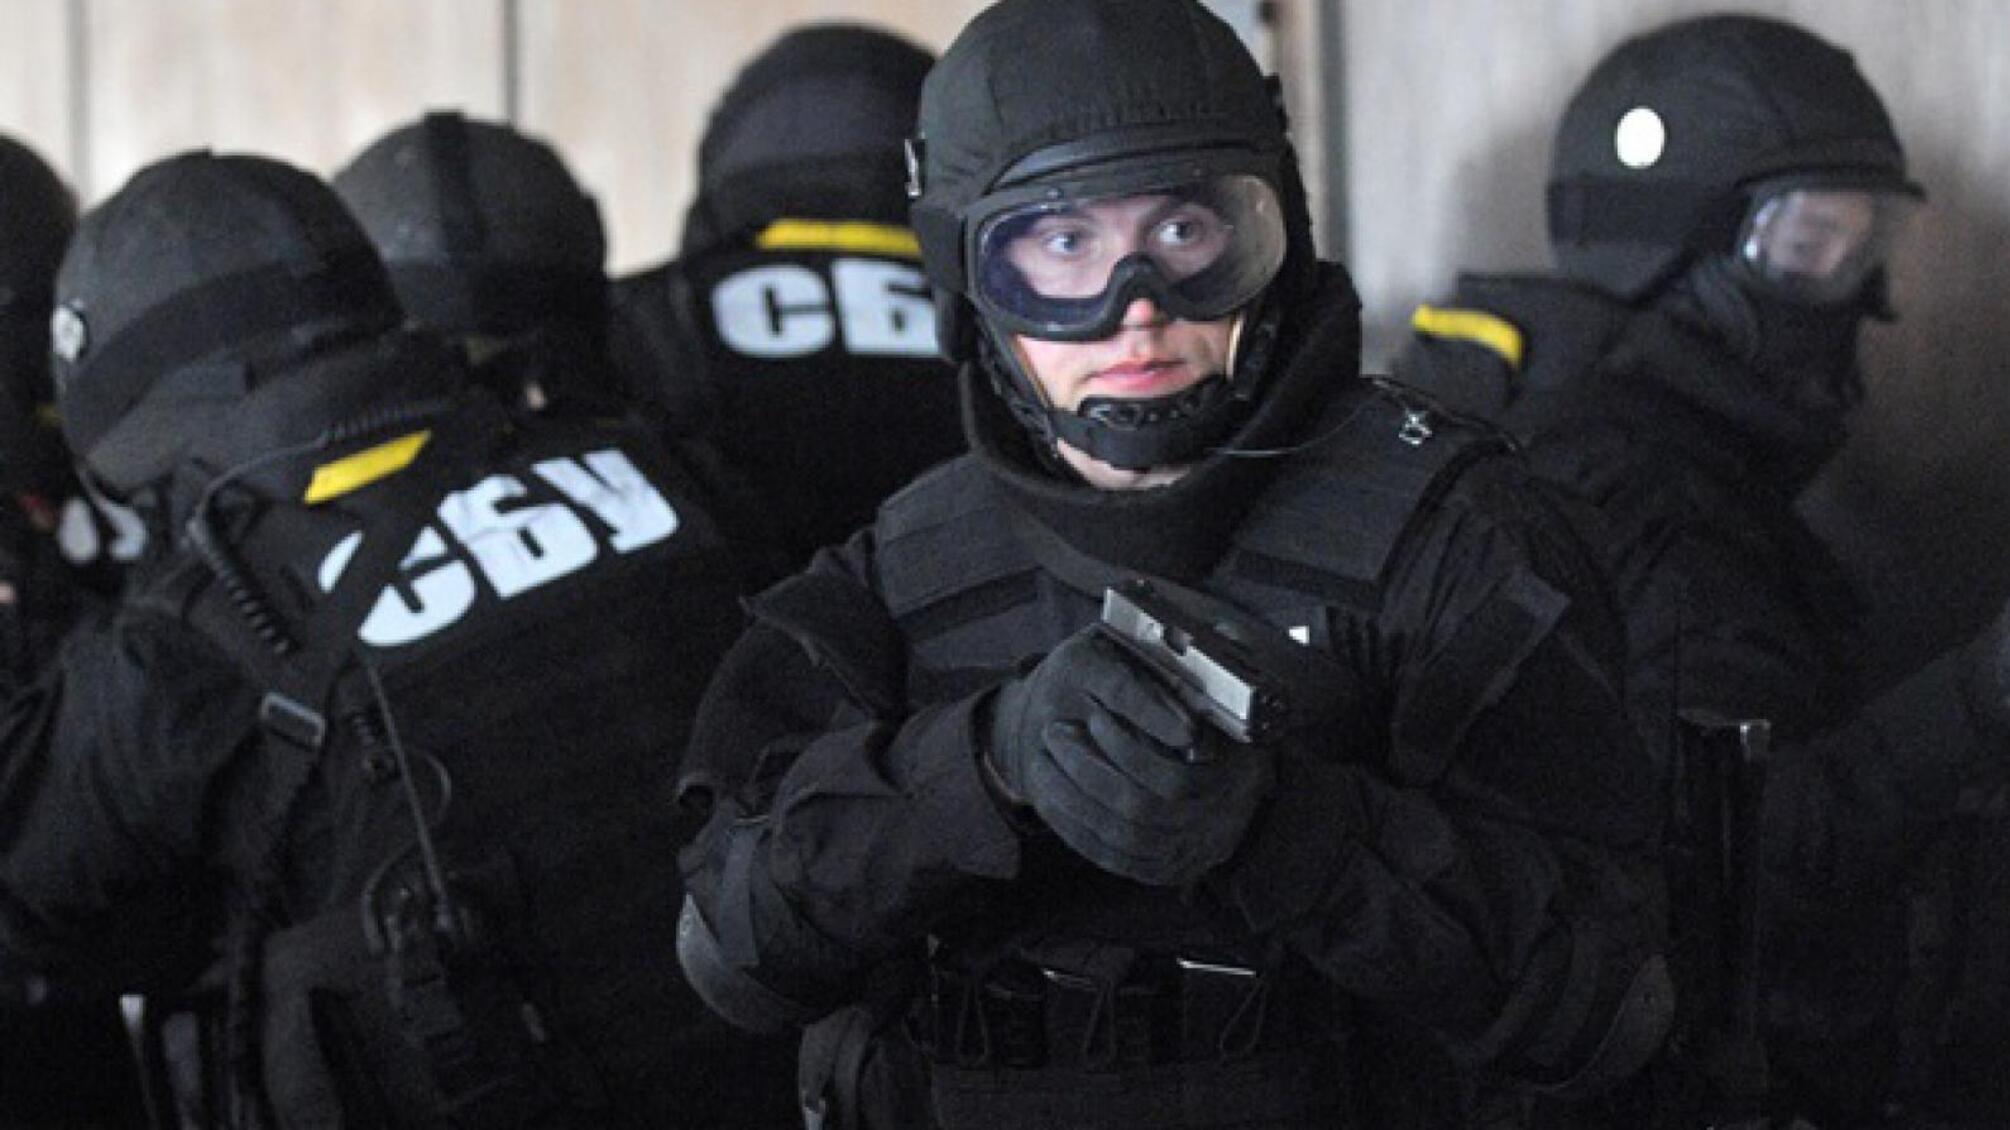 Поліція, СБУ та працівники військкомату: в офіс Саакашвілі прийшли силовики – кадри